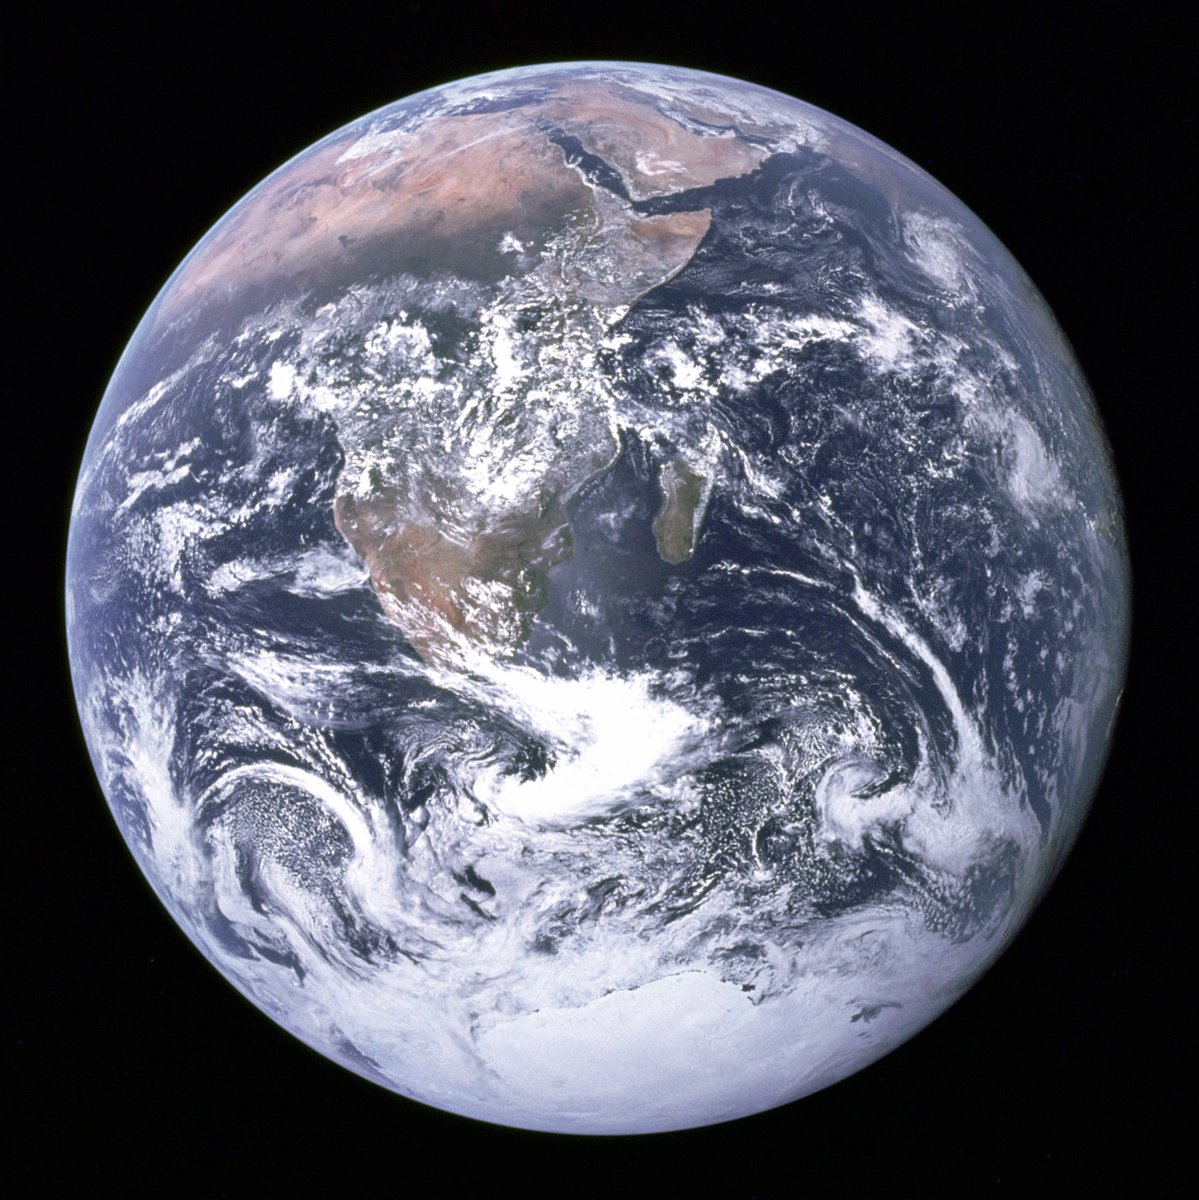 'Dünya'nın Mavi Misket'' olarak bilinen, Dünya'nın ilk tam renkli görüntüsü.

7 Aralık 1972 tarihinde Apollo 17 astronotları Eugene Cernan, Harrison Schmitt ve Ronald Evans tarafından Ay'a doğru giderken Apollo 17 uzay aracından çekildi. 🌍🚀 #Dünya #Uzay #Apollo17